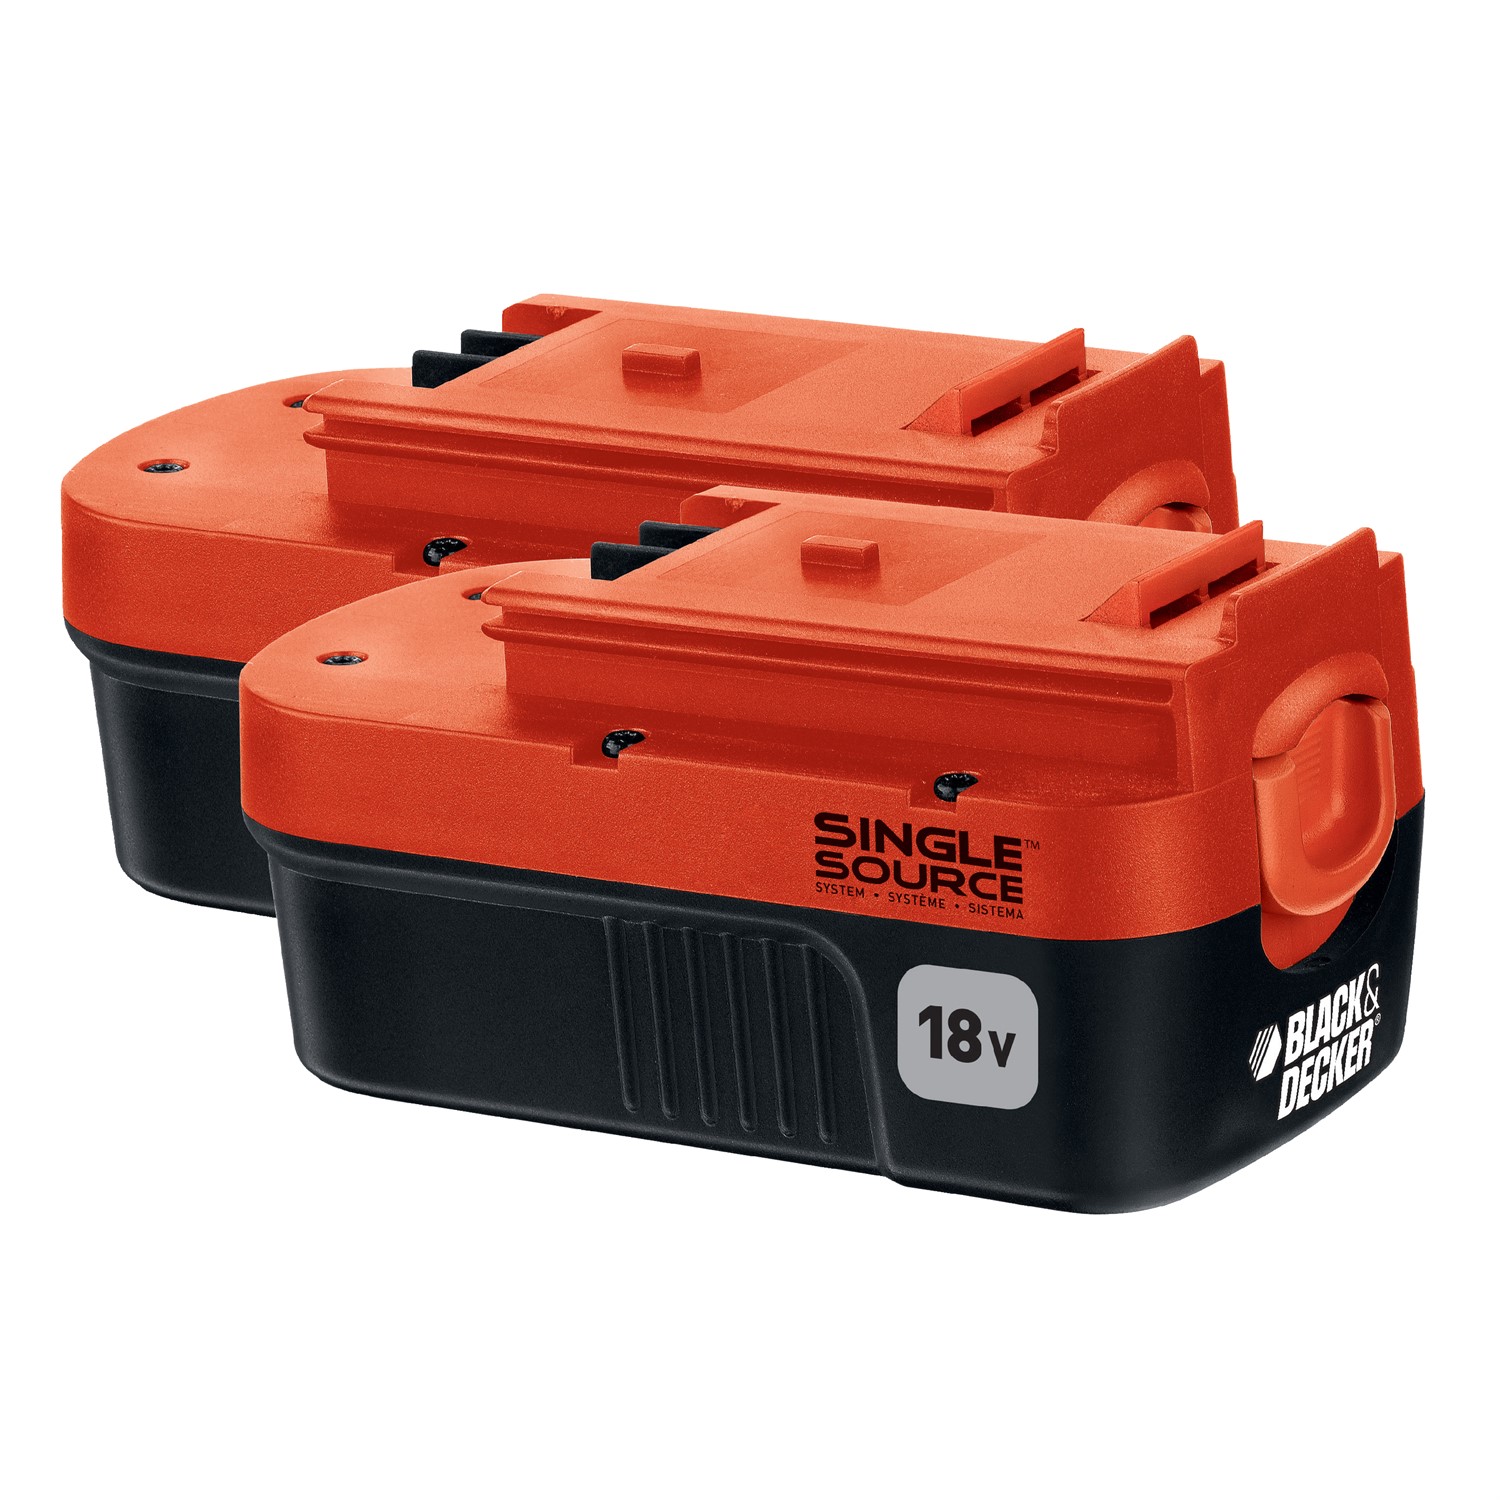 BLACK+DECKER HPB18-OPE 18V Battery for sale online